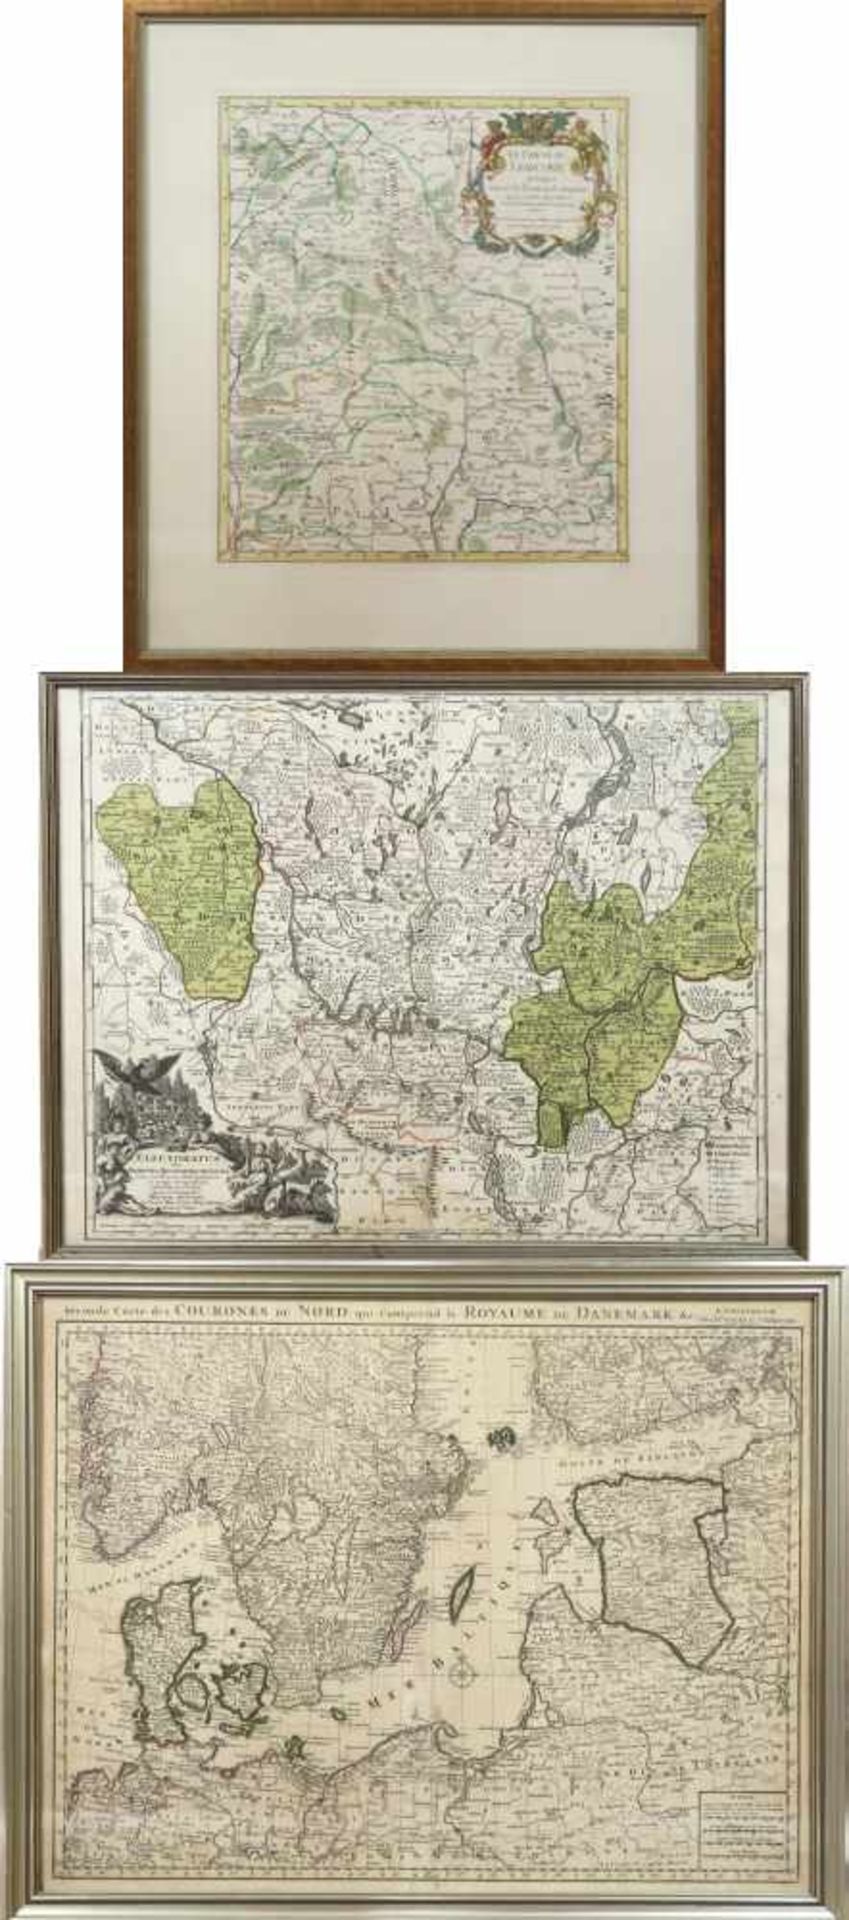 Electoratus five Marchia Brandenburgensis / Seconde carte du Courones du Nord / Le Cercle de Francon